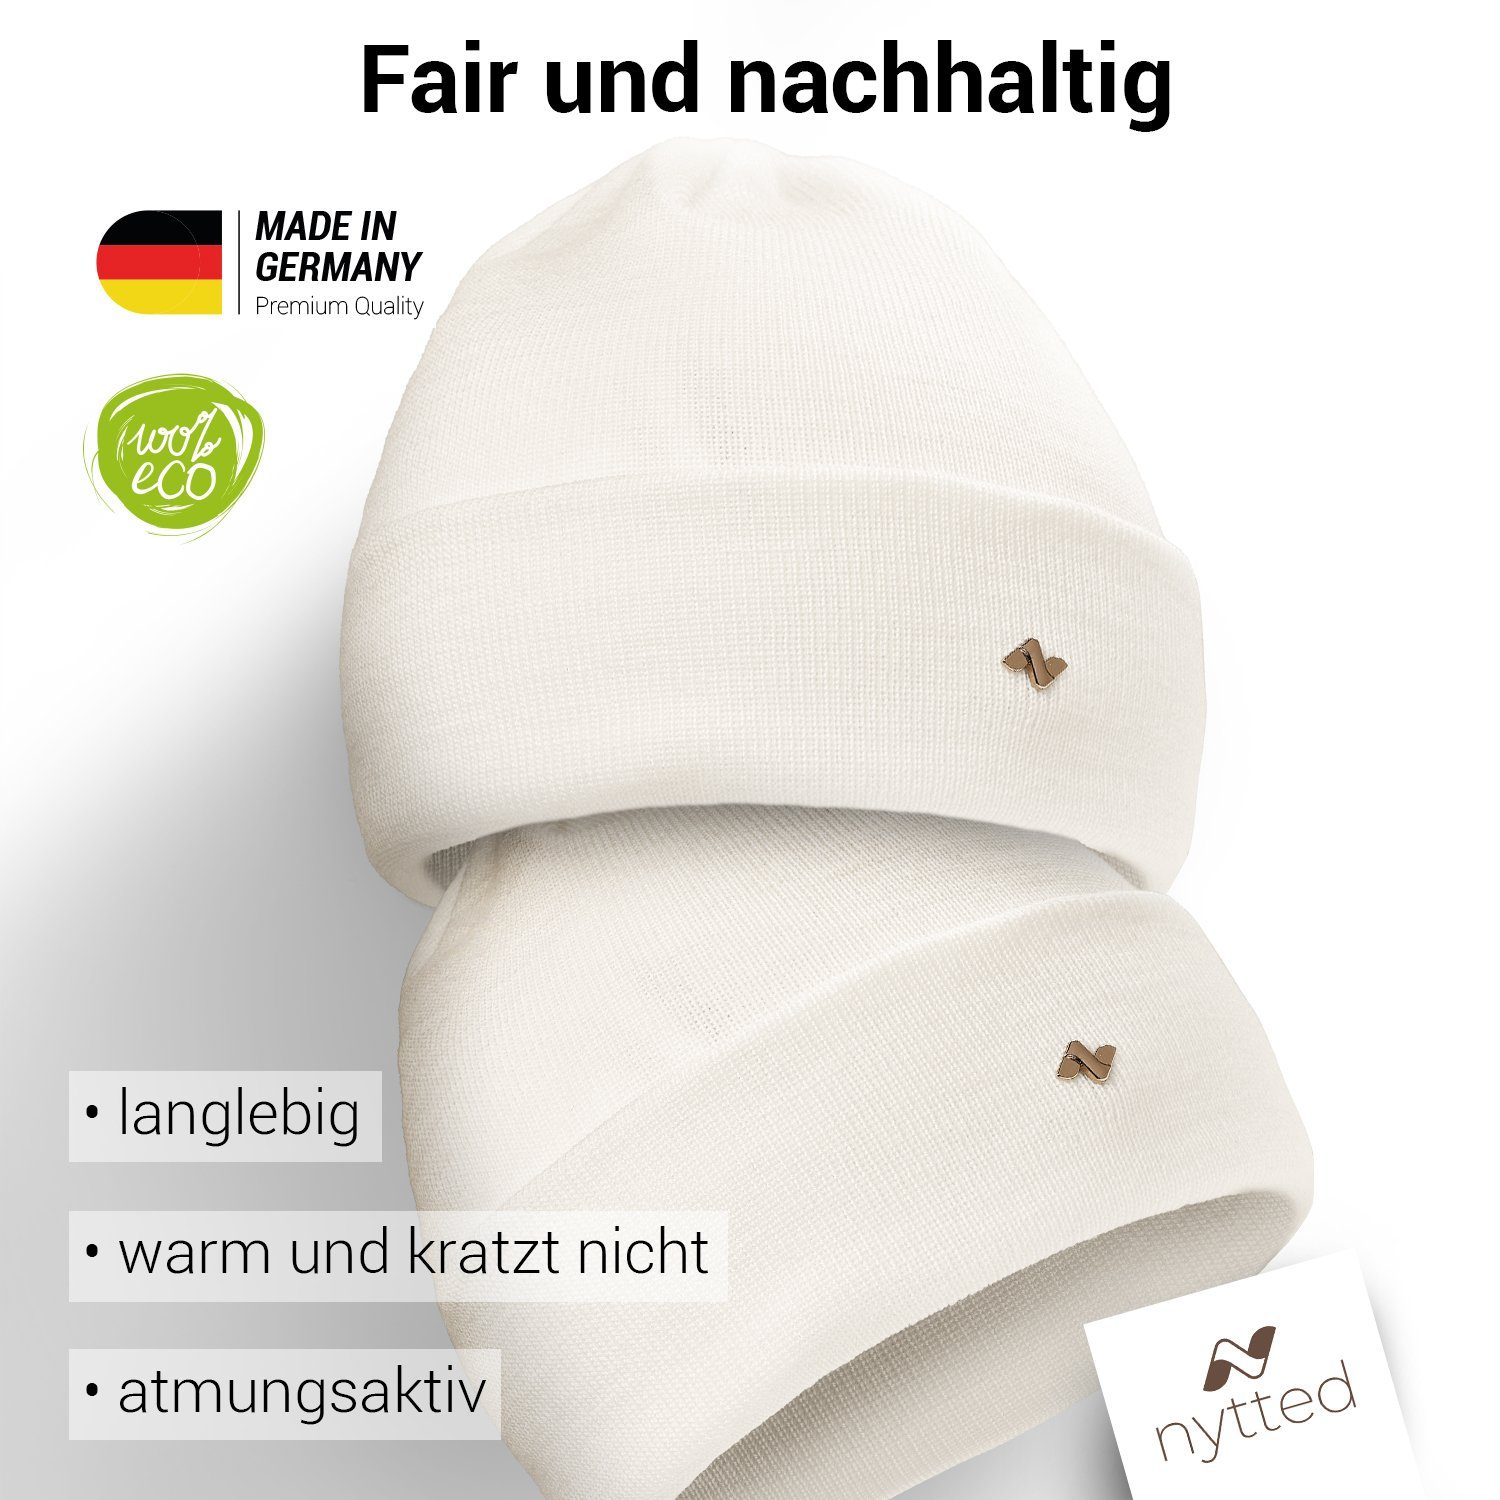 Made - Wintermütze Germany NYTTED® in - 100% Beanie wollweiss Merino-Wolle für & - Damen Herren